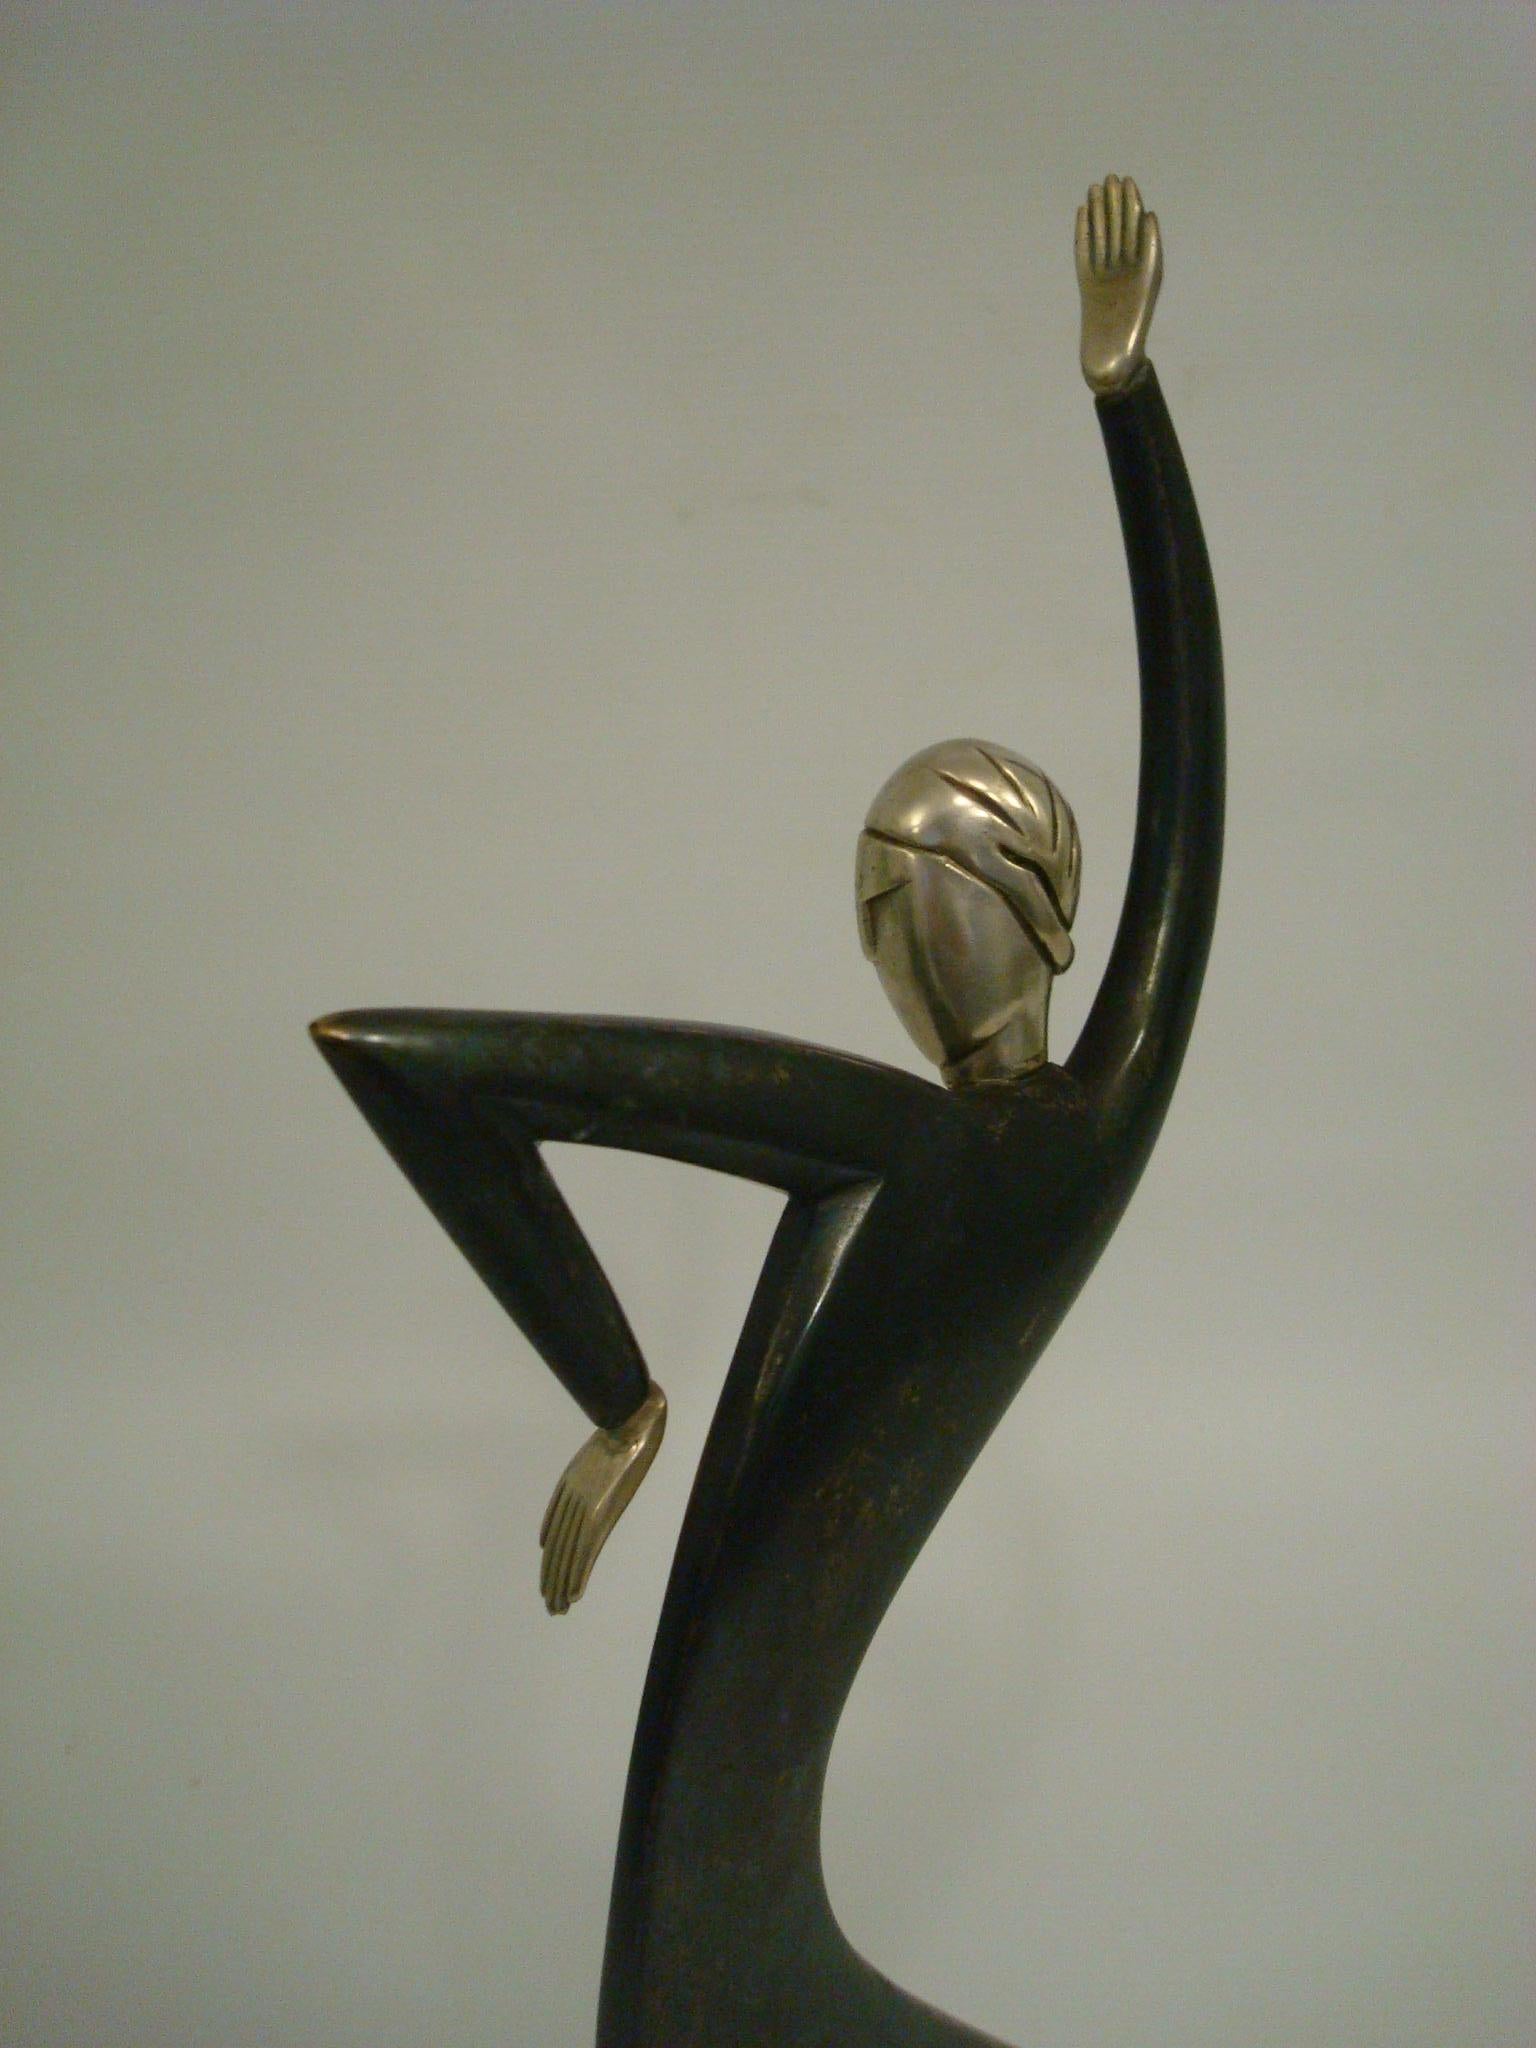 Polychromed Franz Hagenauer Bronze Sculpture Dancer Wiener Werkstatte, Josephine Baker